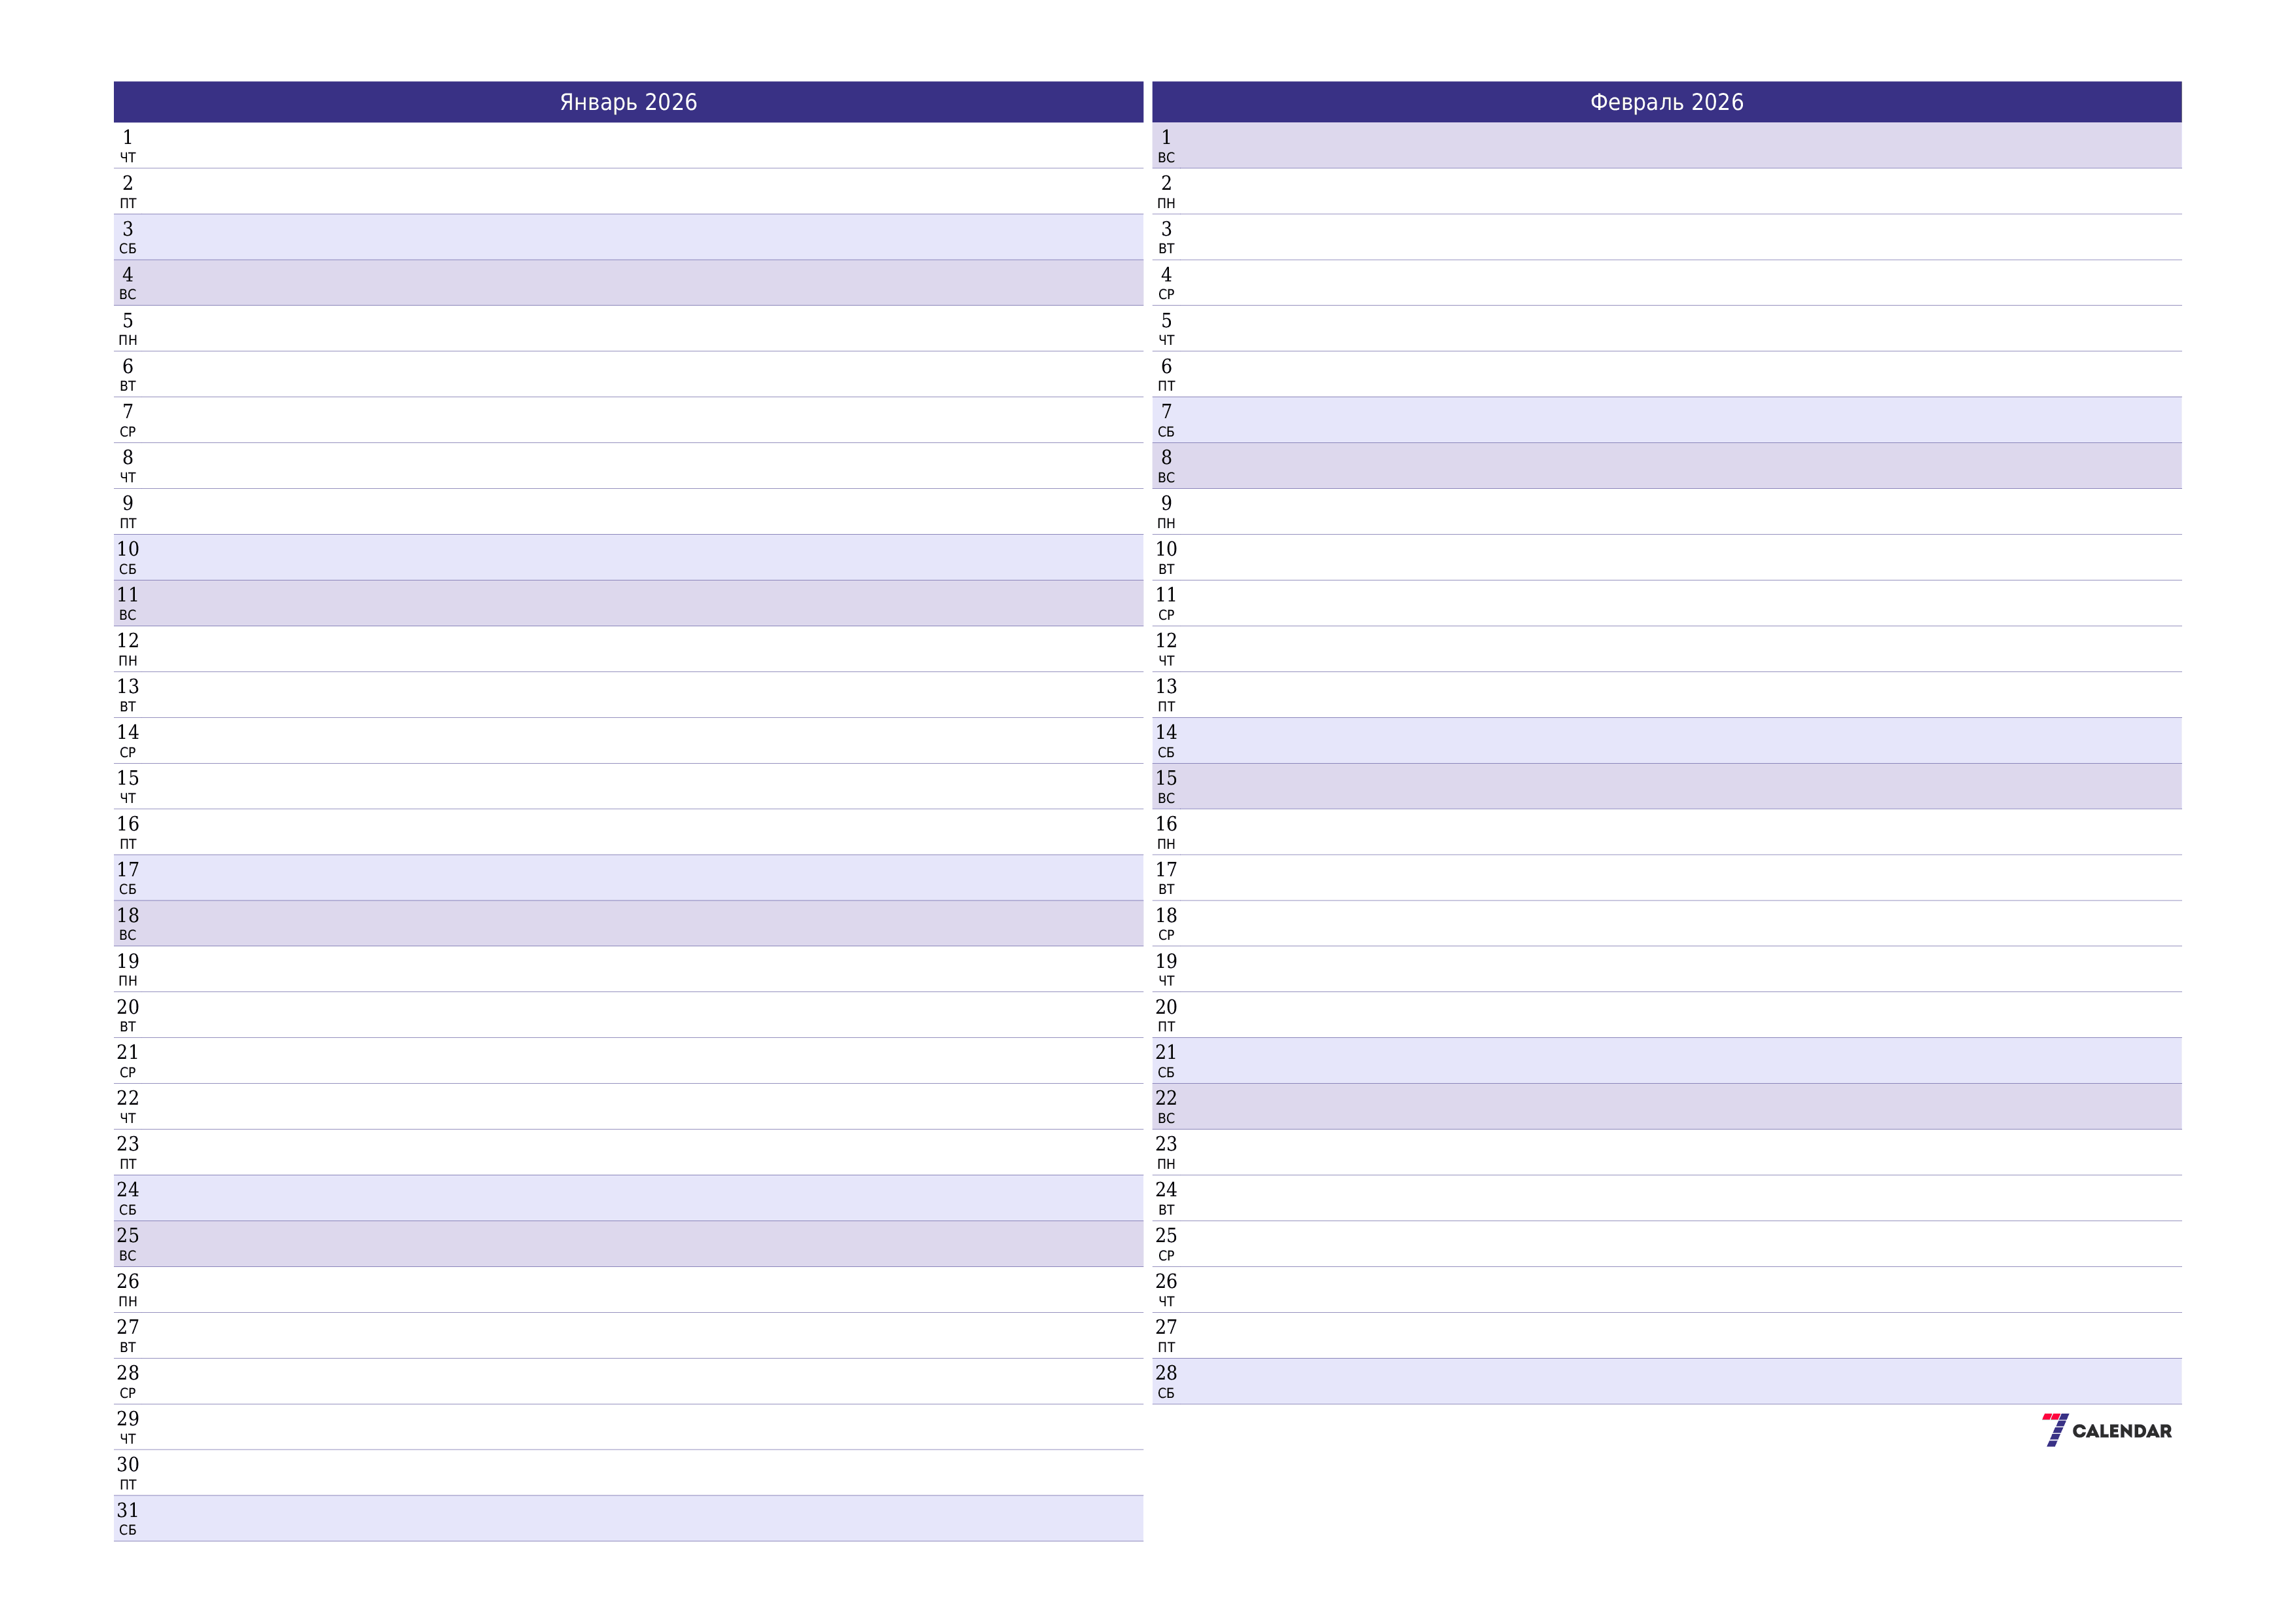 Пустой ежемесячный календарь-планер на месяц Январь 2026